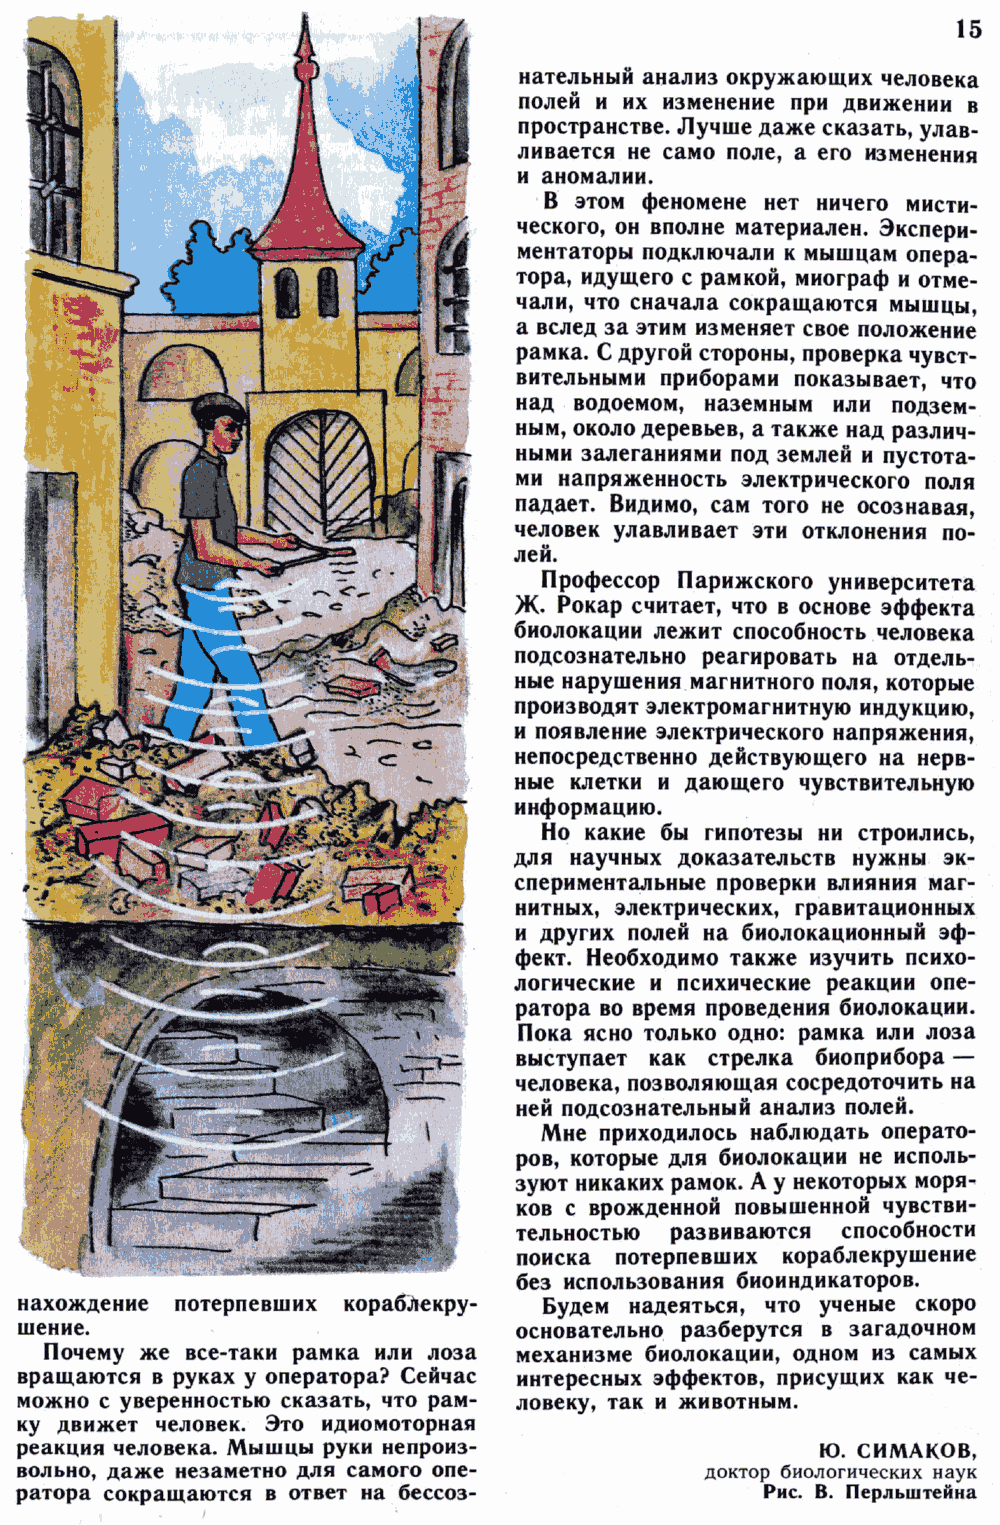 Загадки биолокации. Ю. Симаков. Юный натуралист, 1989, №1, с.12-15. Фотокопия №4